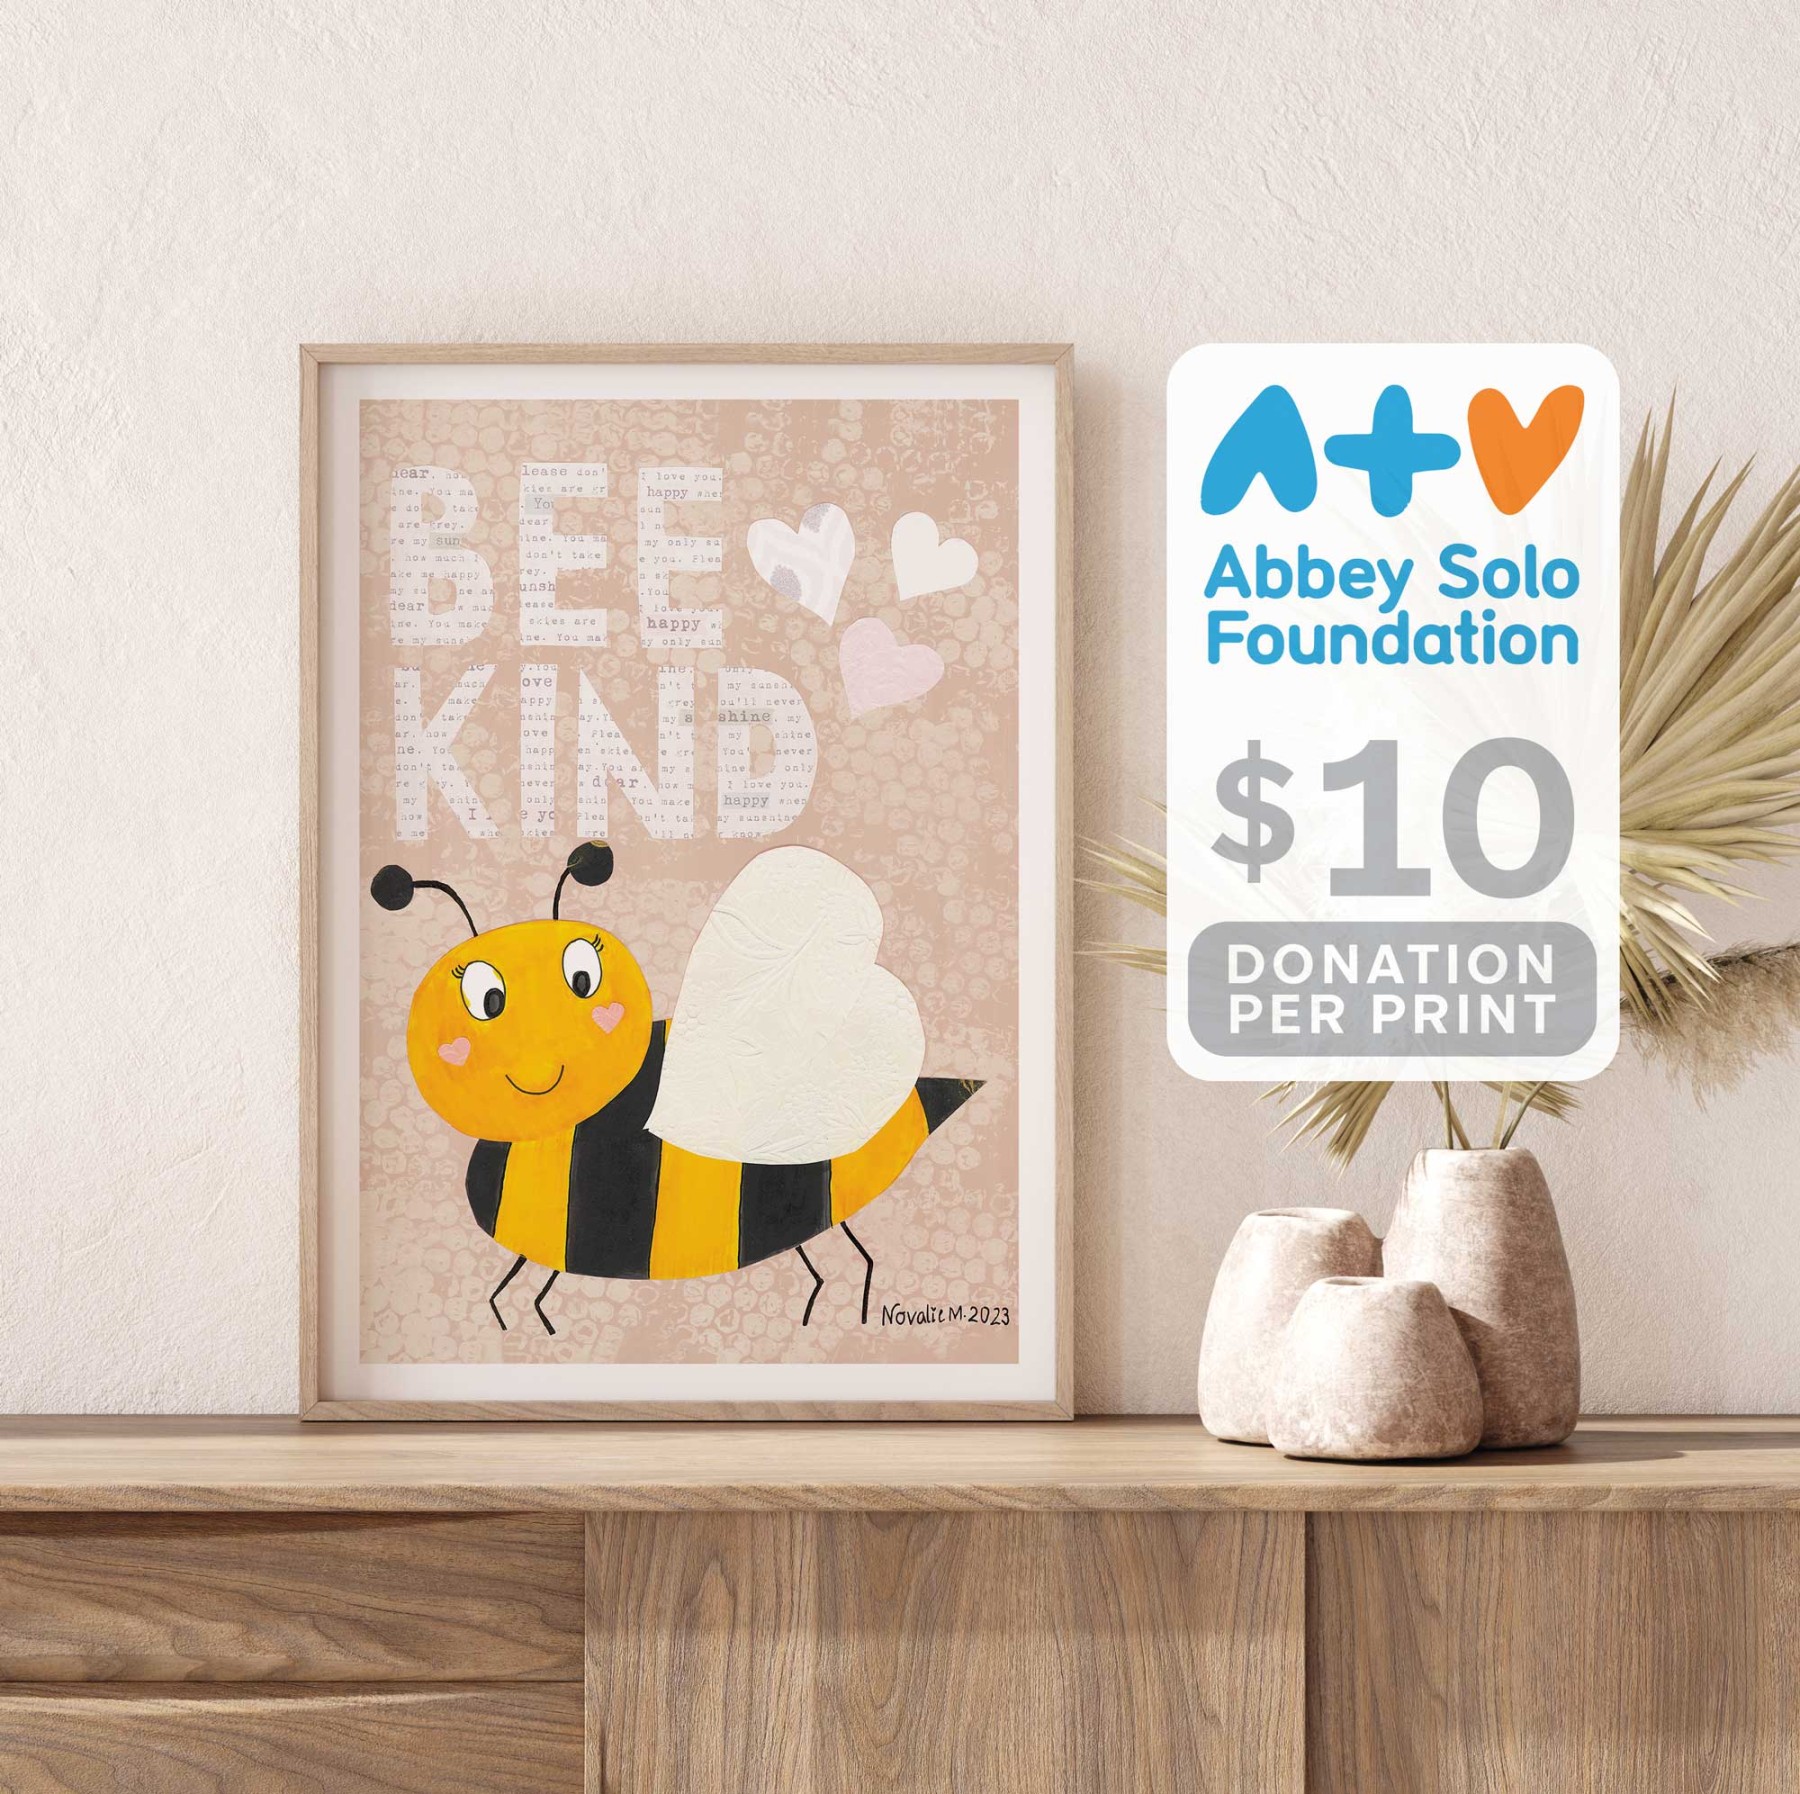 Bee Kind - Beige by Novalie | Charity PRINT